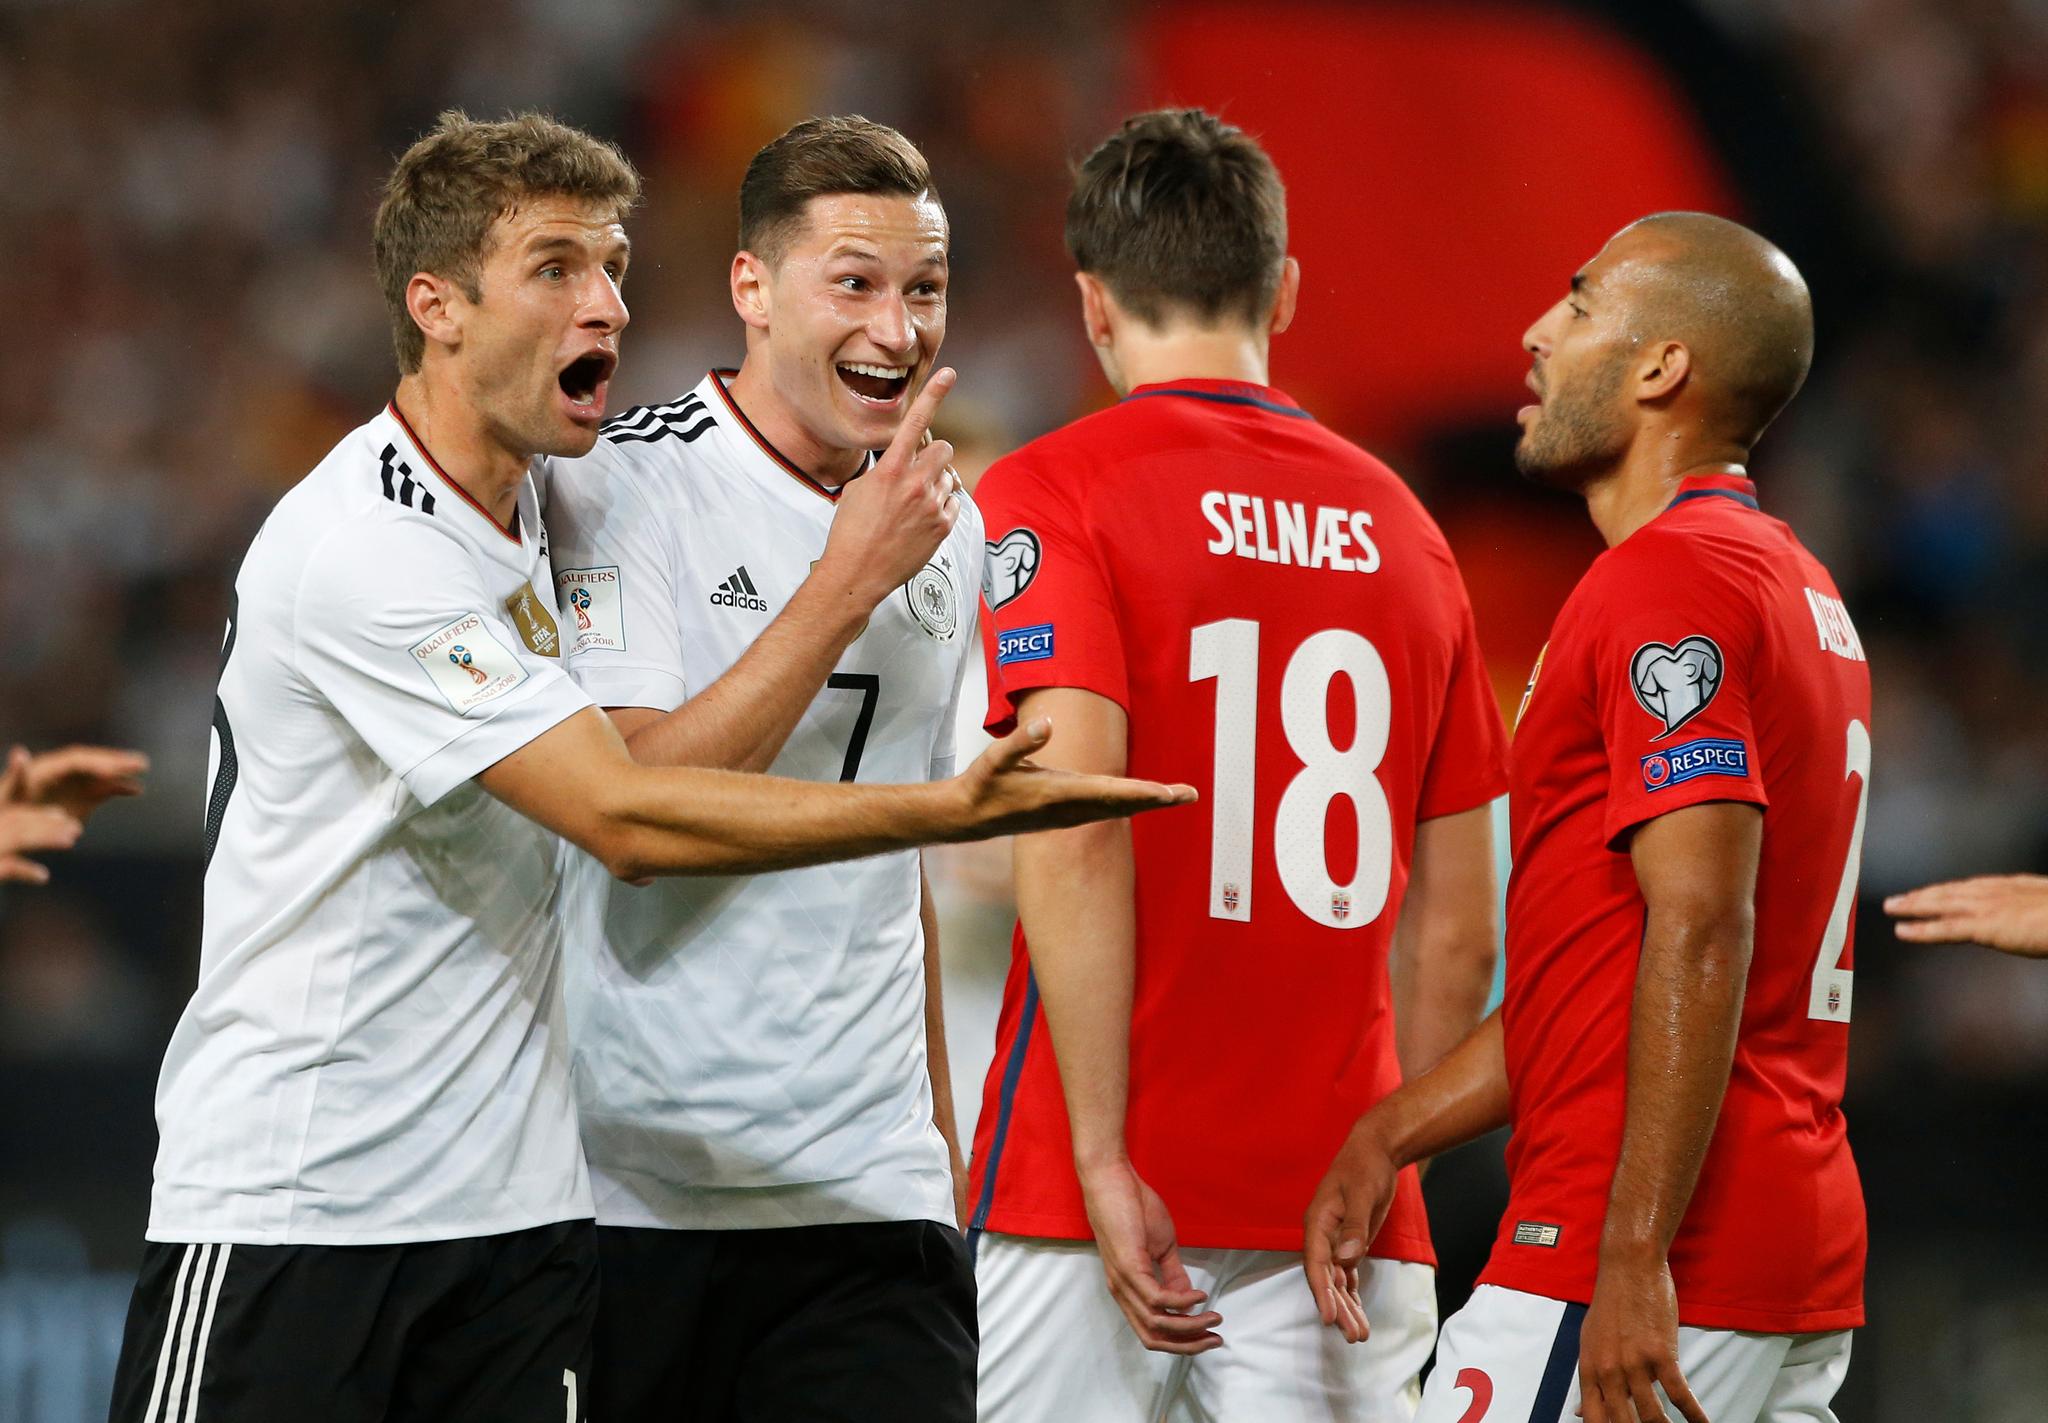 De tyske spillerne hadde all grunn til å smile, mens et norske laget ble fullstendig ydmyket.